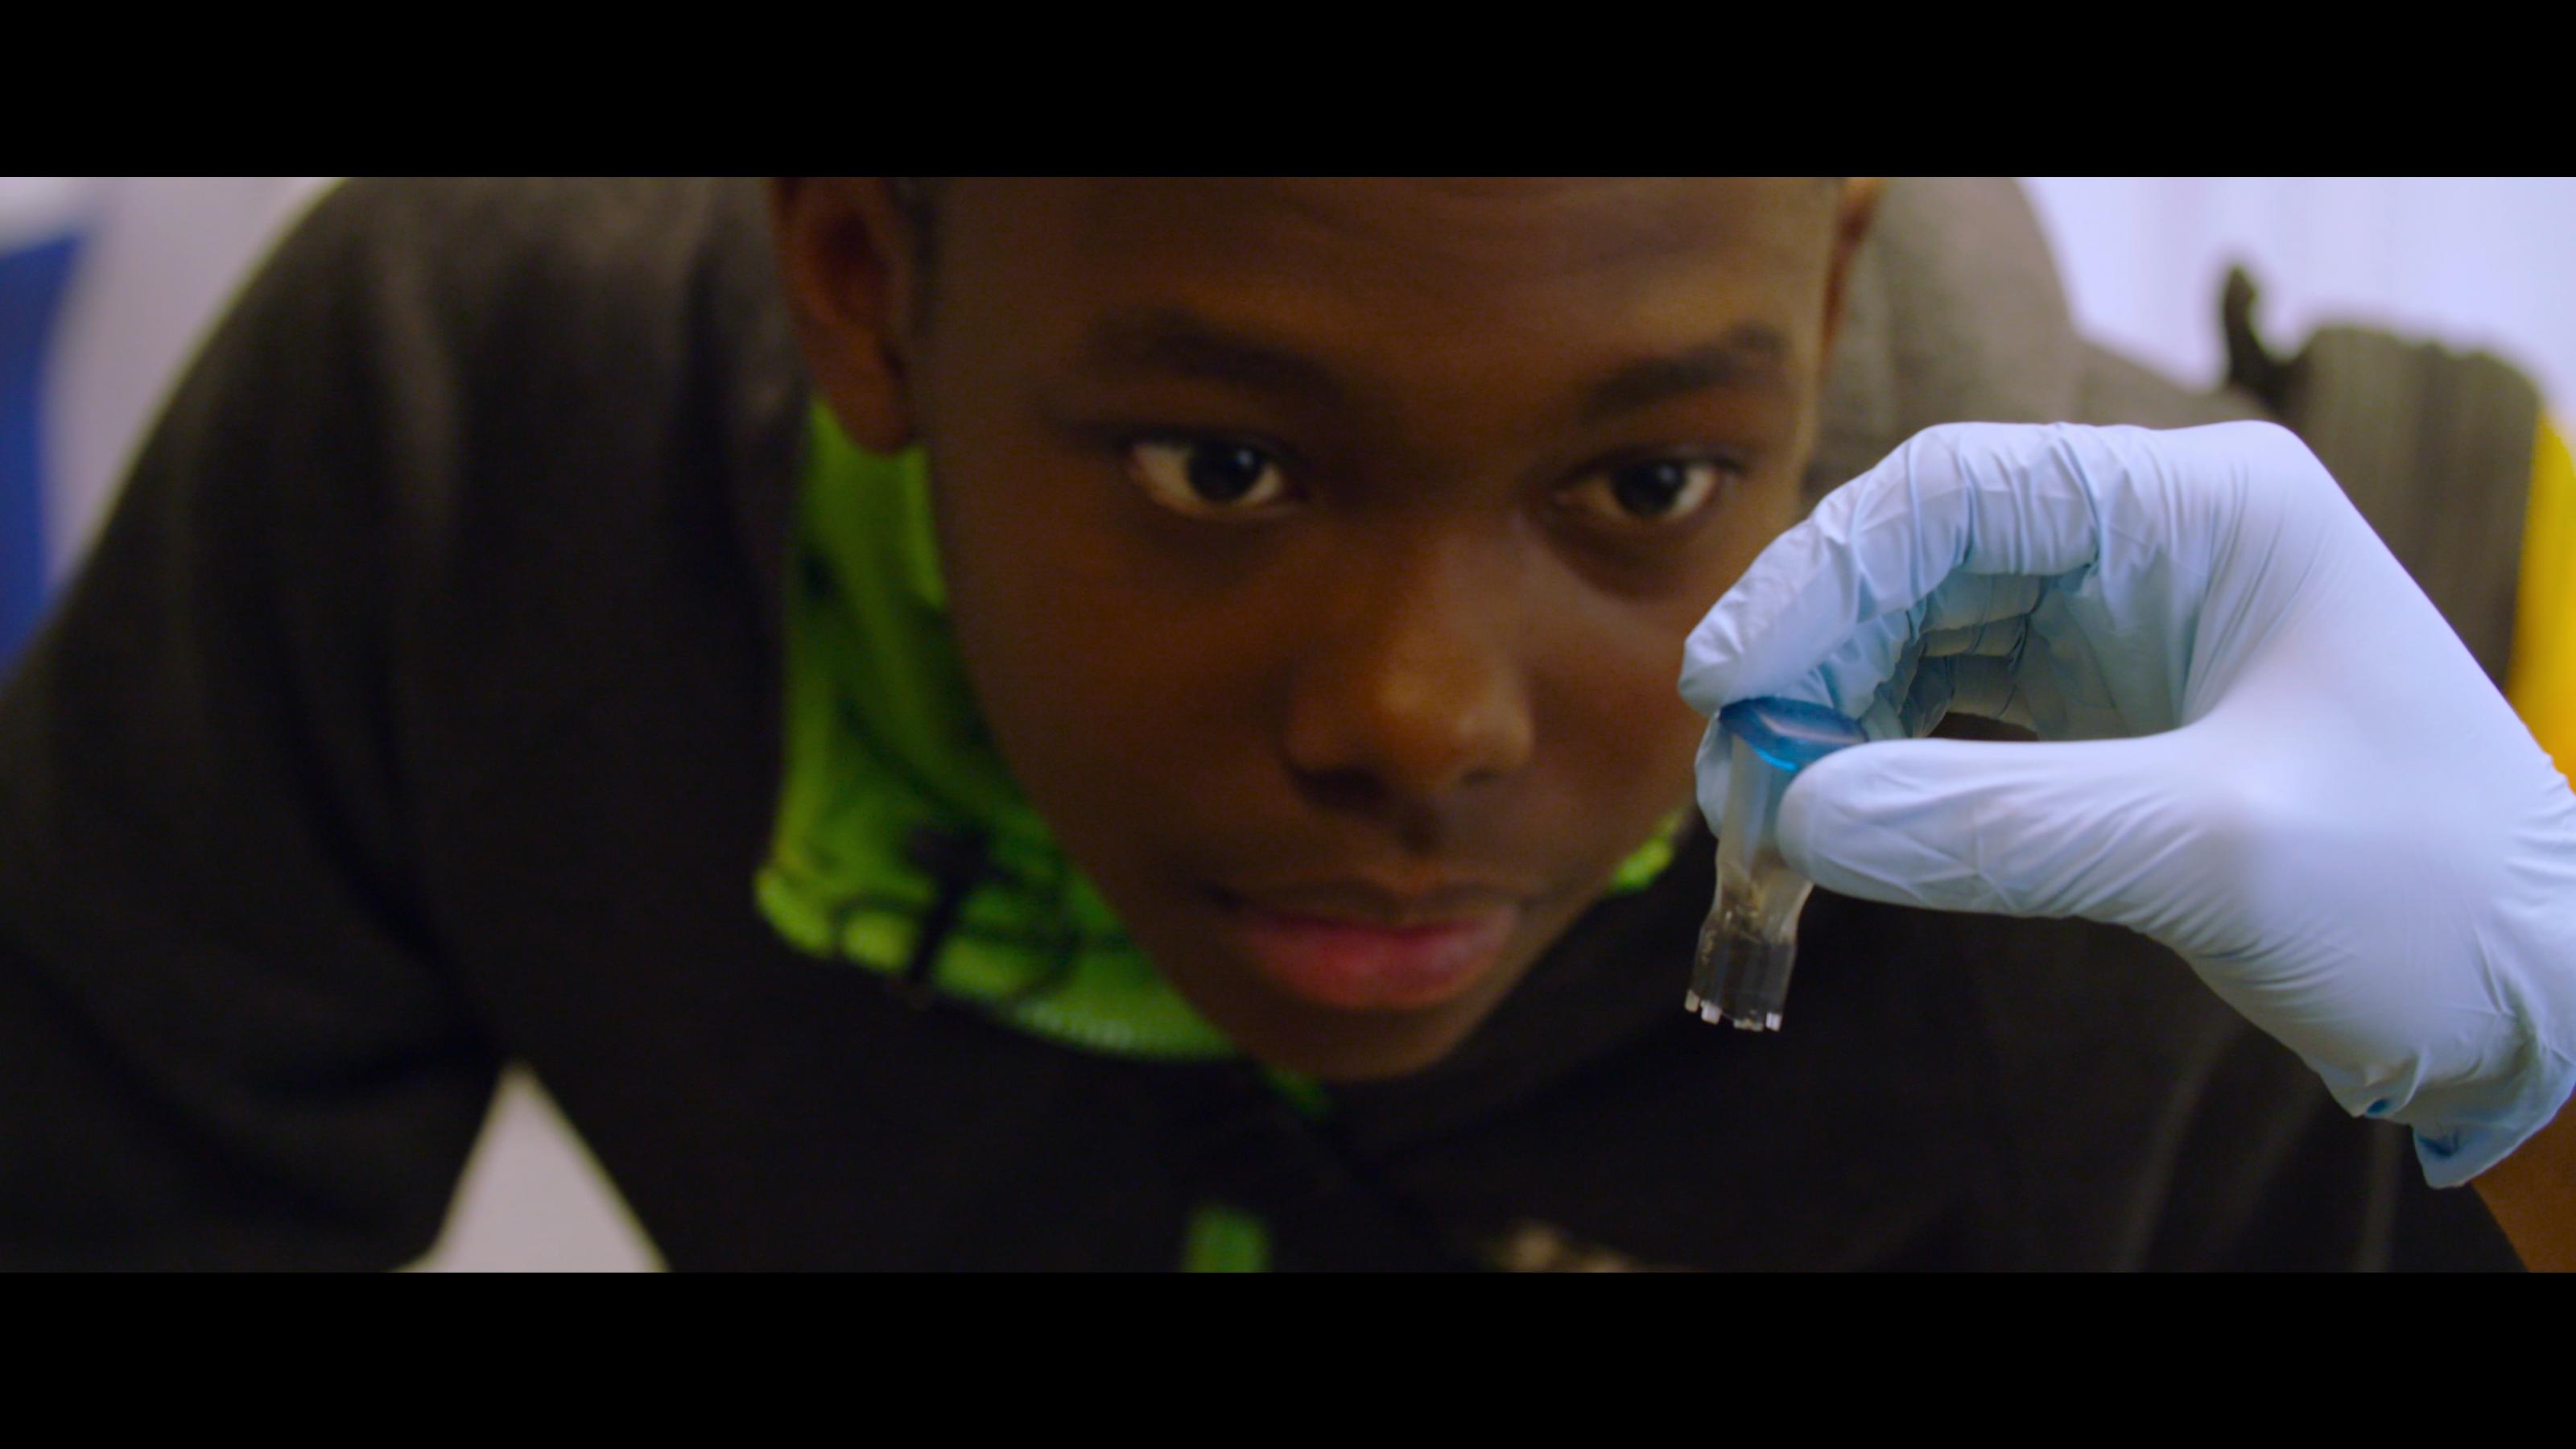 David Sanchez, ein Junge aus dem Dokumentarfilm Human Nature, zu Besuch in einem Labor